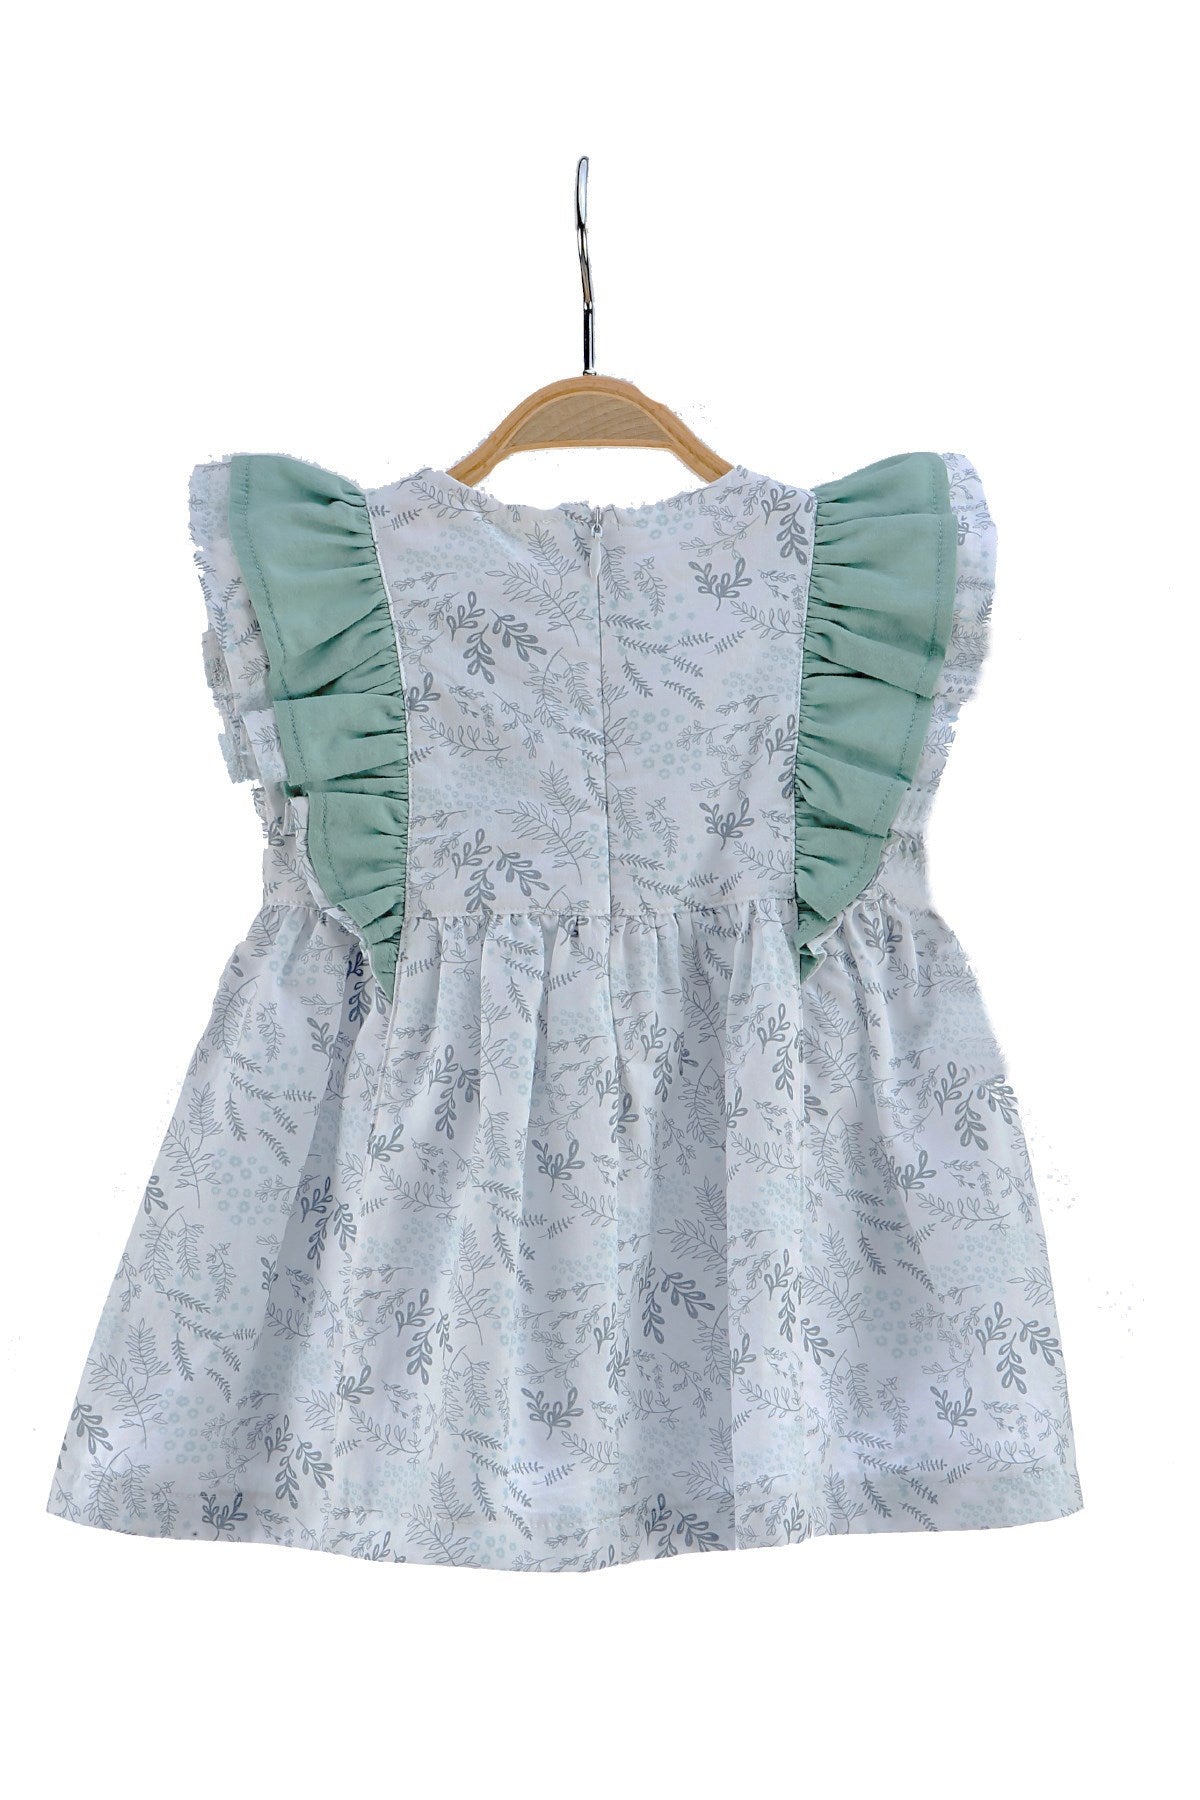 Kız Bebek Çiçek Desenli Fırfırlı Elbise (6ay-4yaş)-1